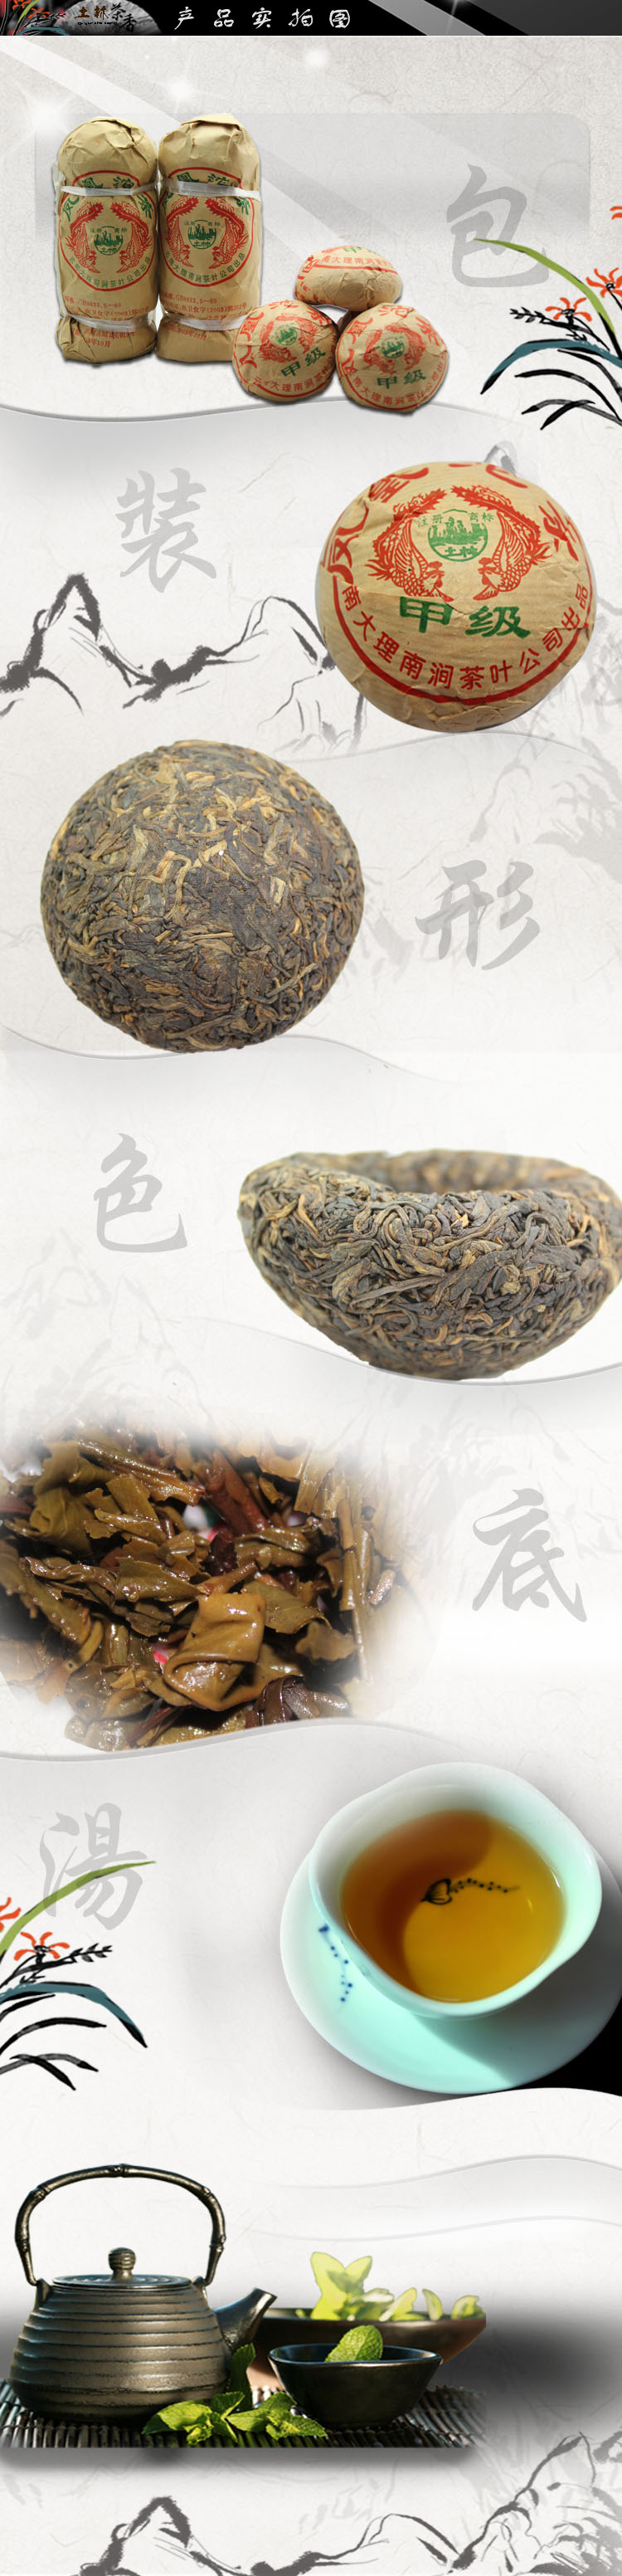 2003年【土林凤凰普洱茶】凤凰沱茶100克生茶甲级土林经典